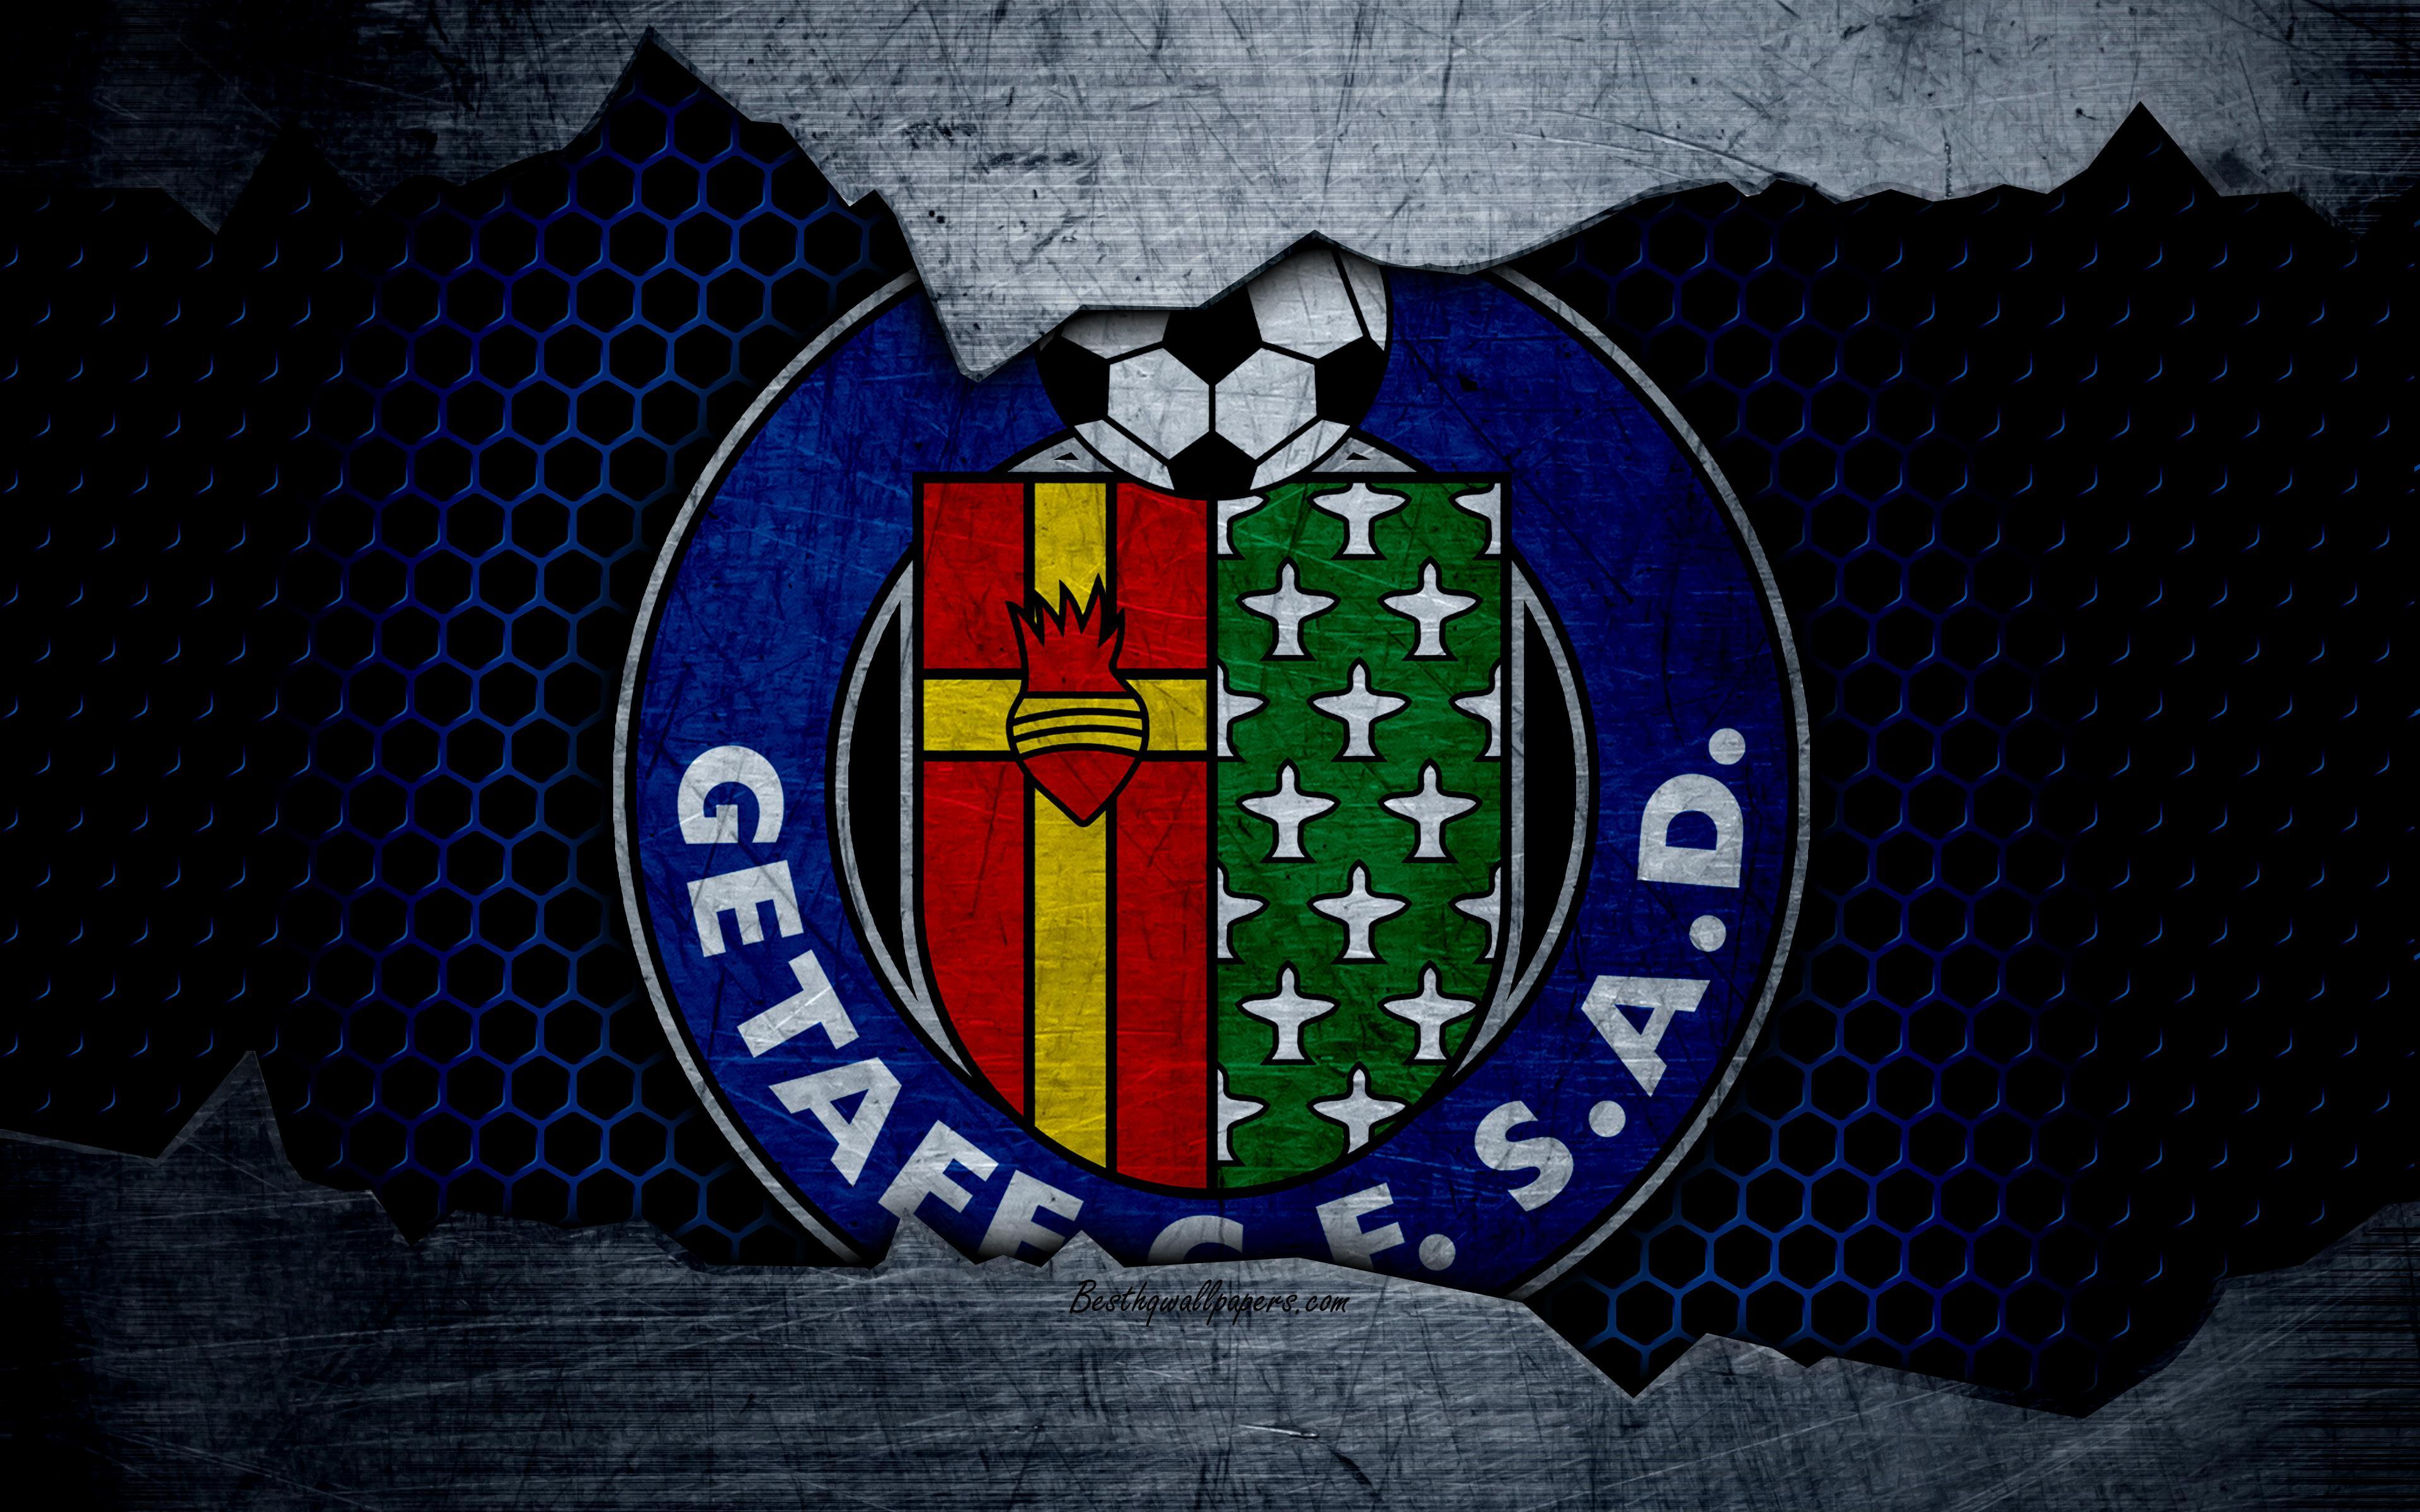 Download wallpaper Getafe CF, 4k, La Liga, football, emblem, logo